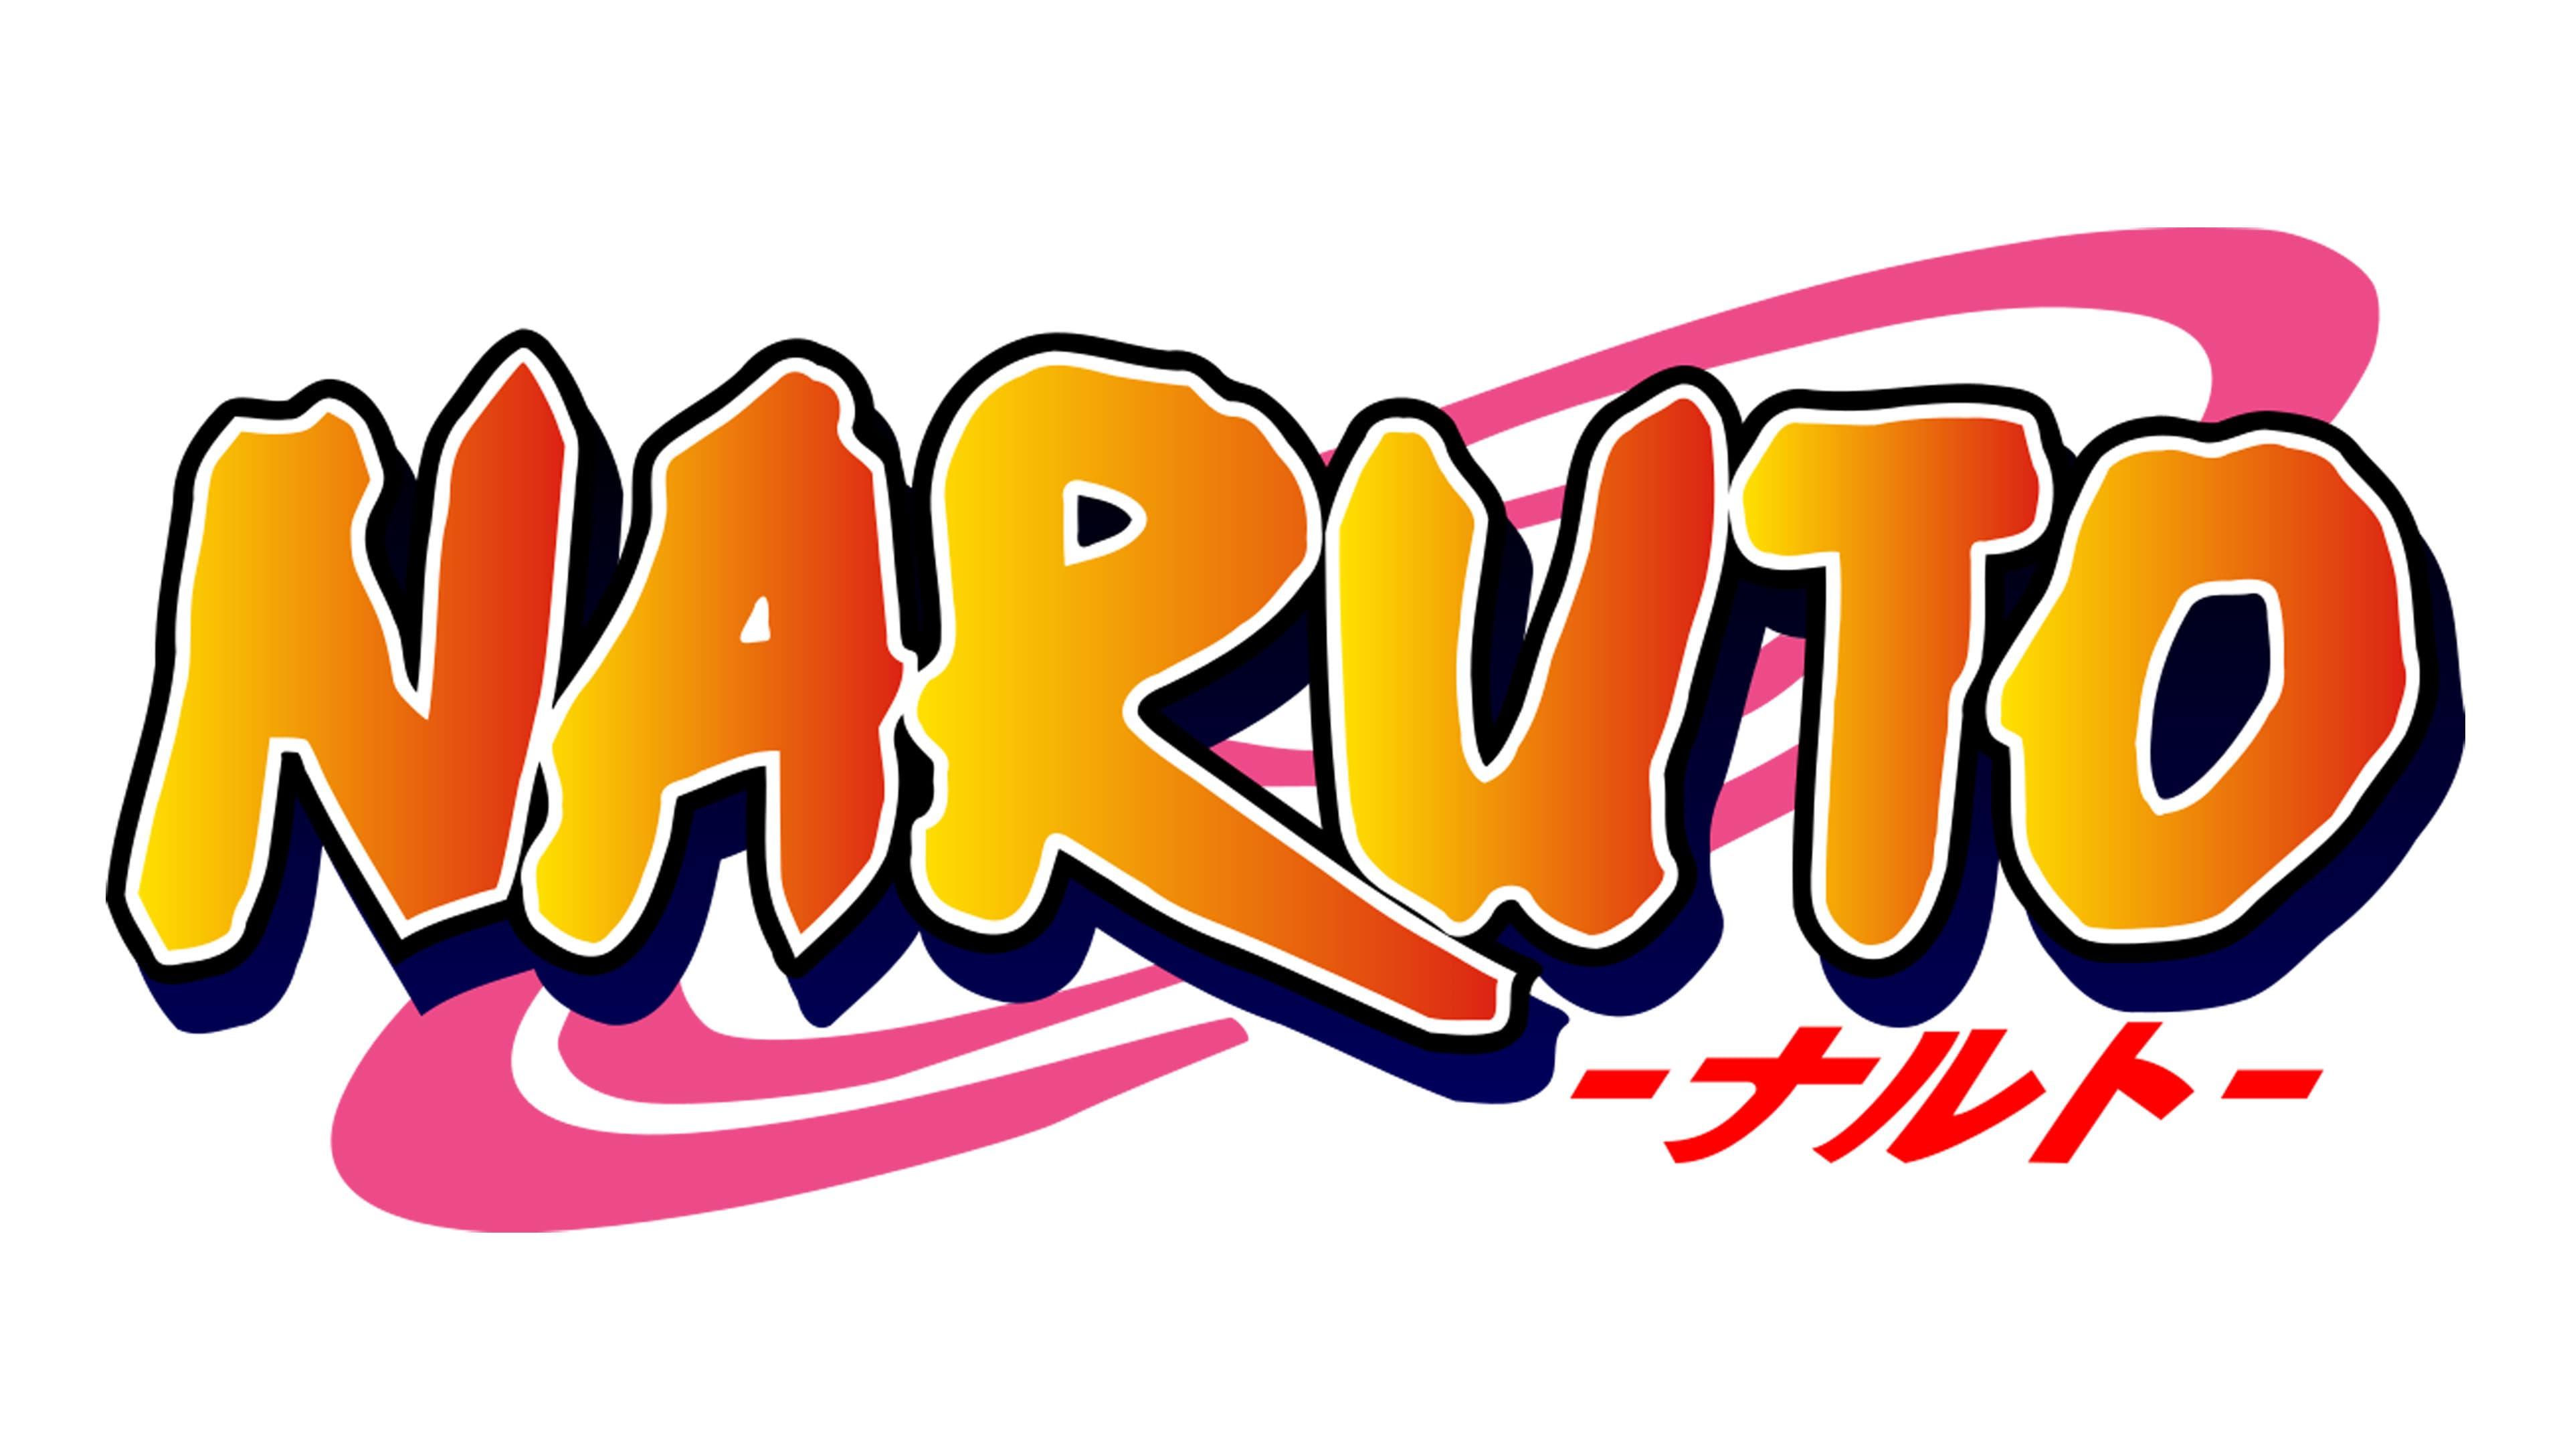 3840 x 2177 · jpeg - Logo de Naruto: la historia y el significado de logotipo, la marca y el simbolo. | png, vector